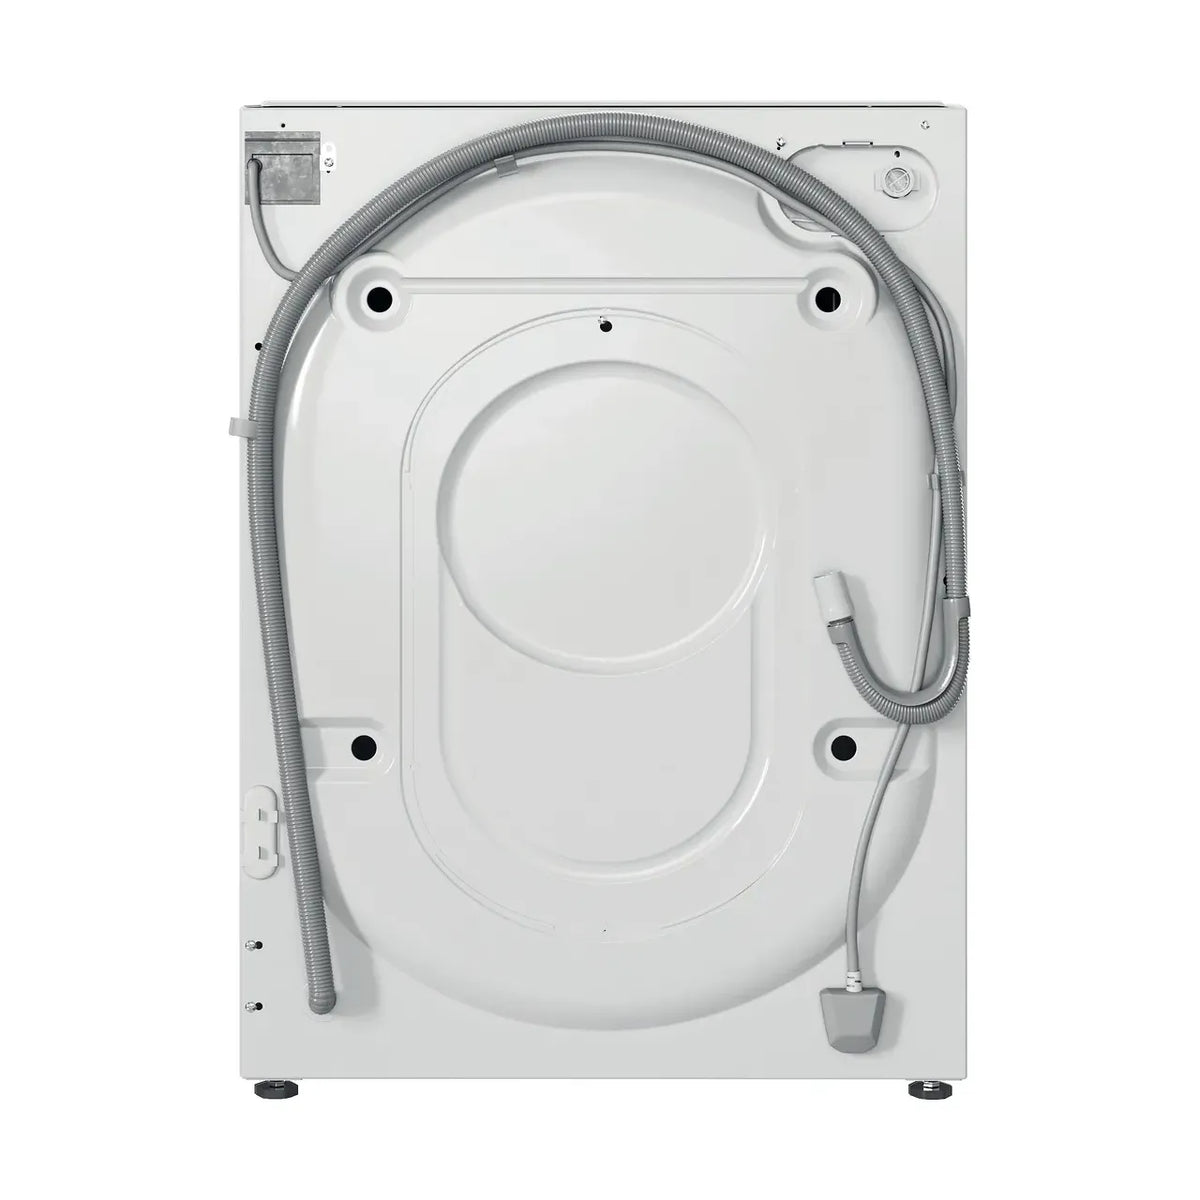 Indesit 9KG 1400 RPM Integrated Washing Machine - White | BIWMIL91485UK from Indesit - DID Electrical